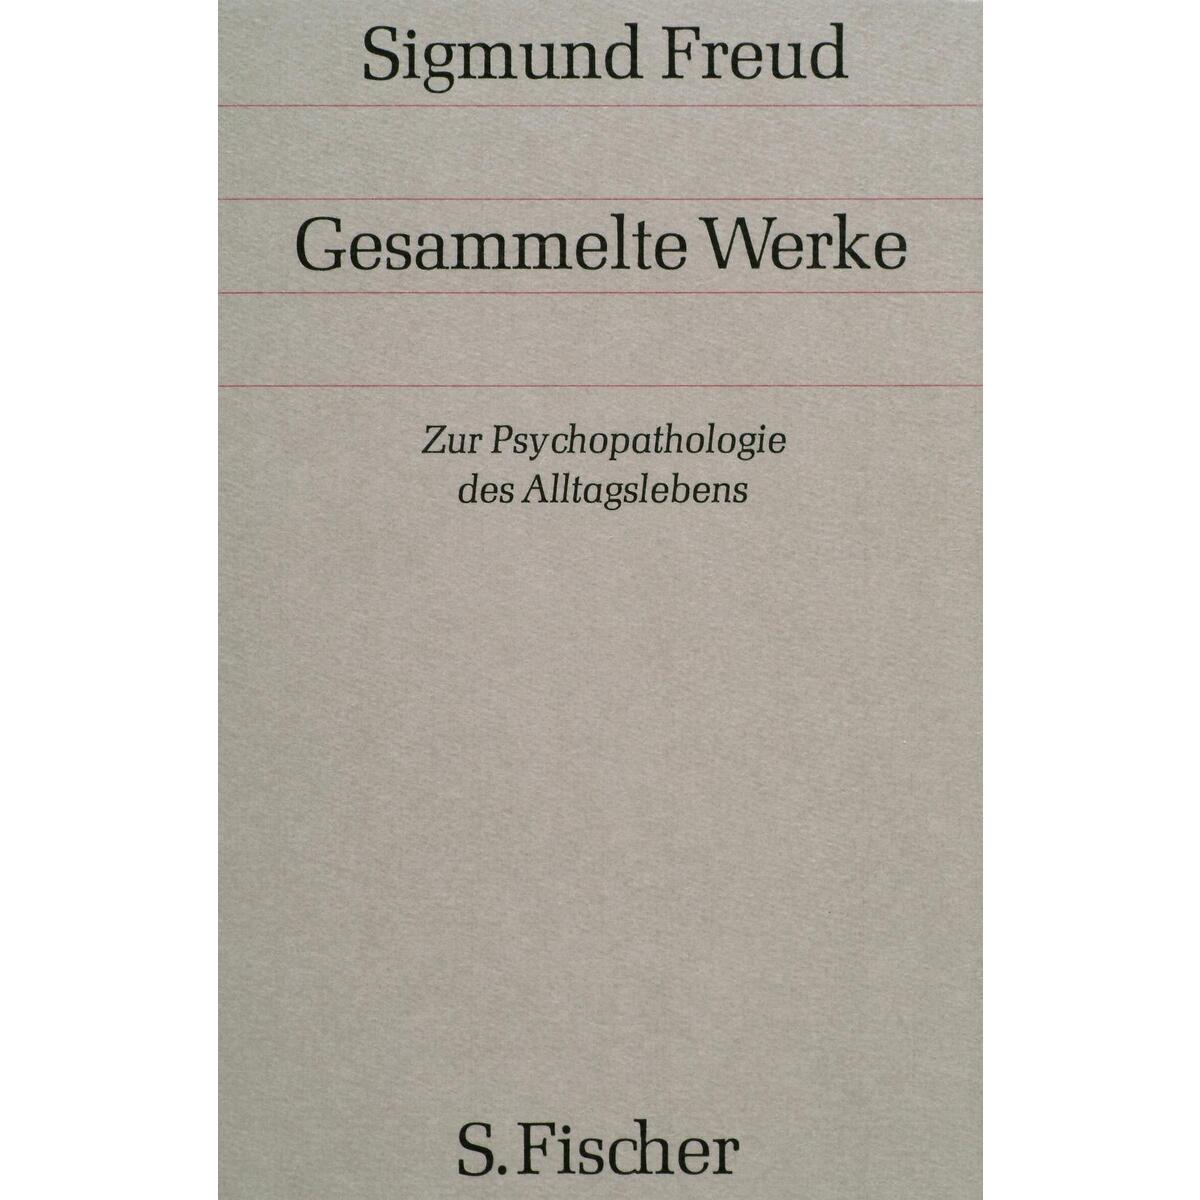 Zur Psychopathologie des Alltagslebens von FISCHER, S.